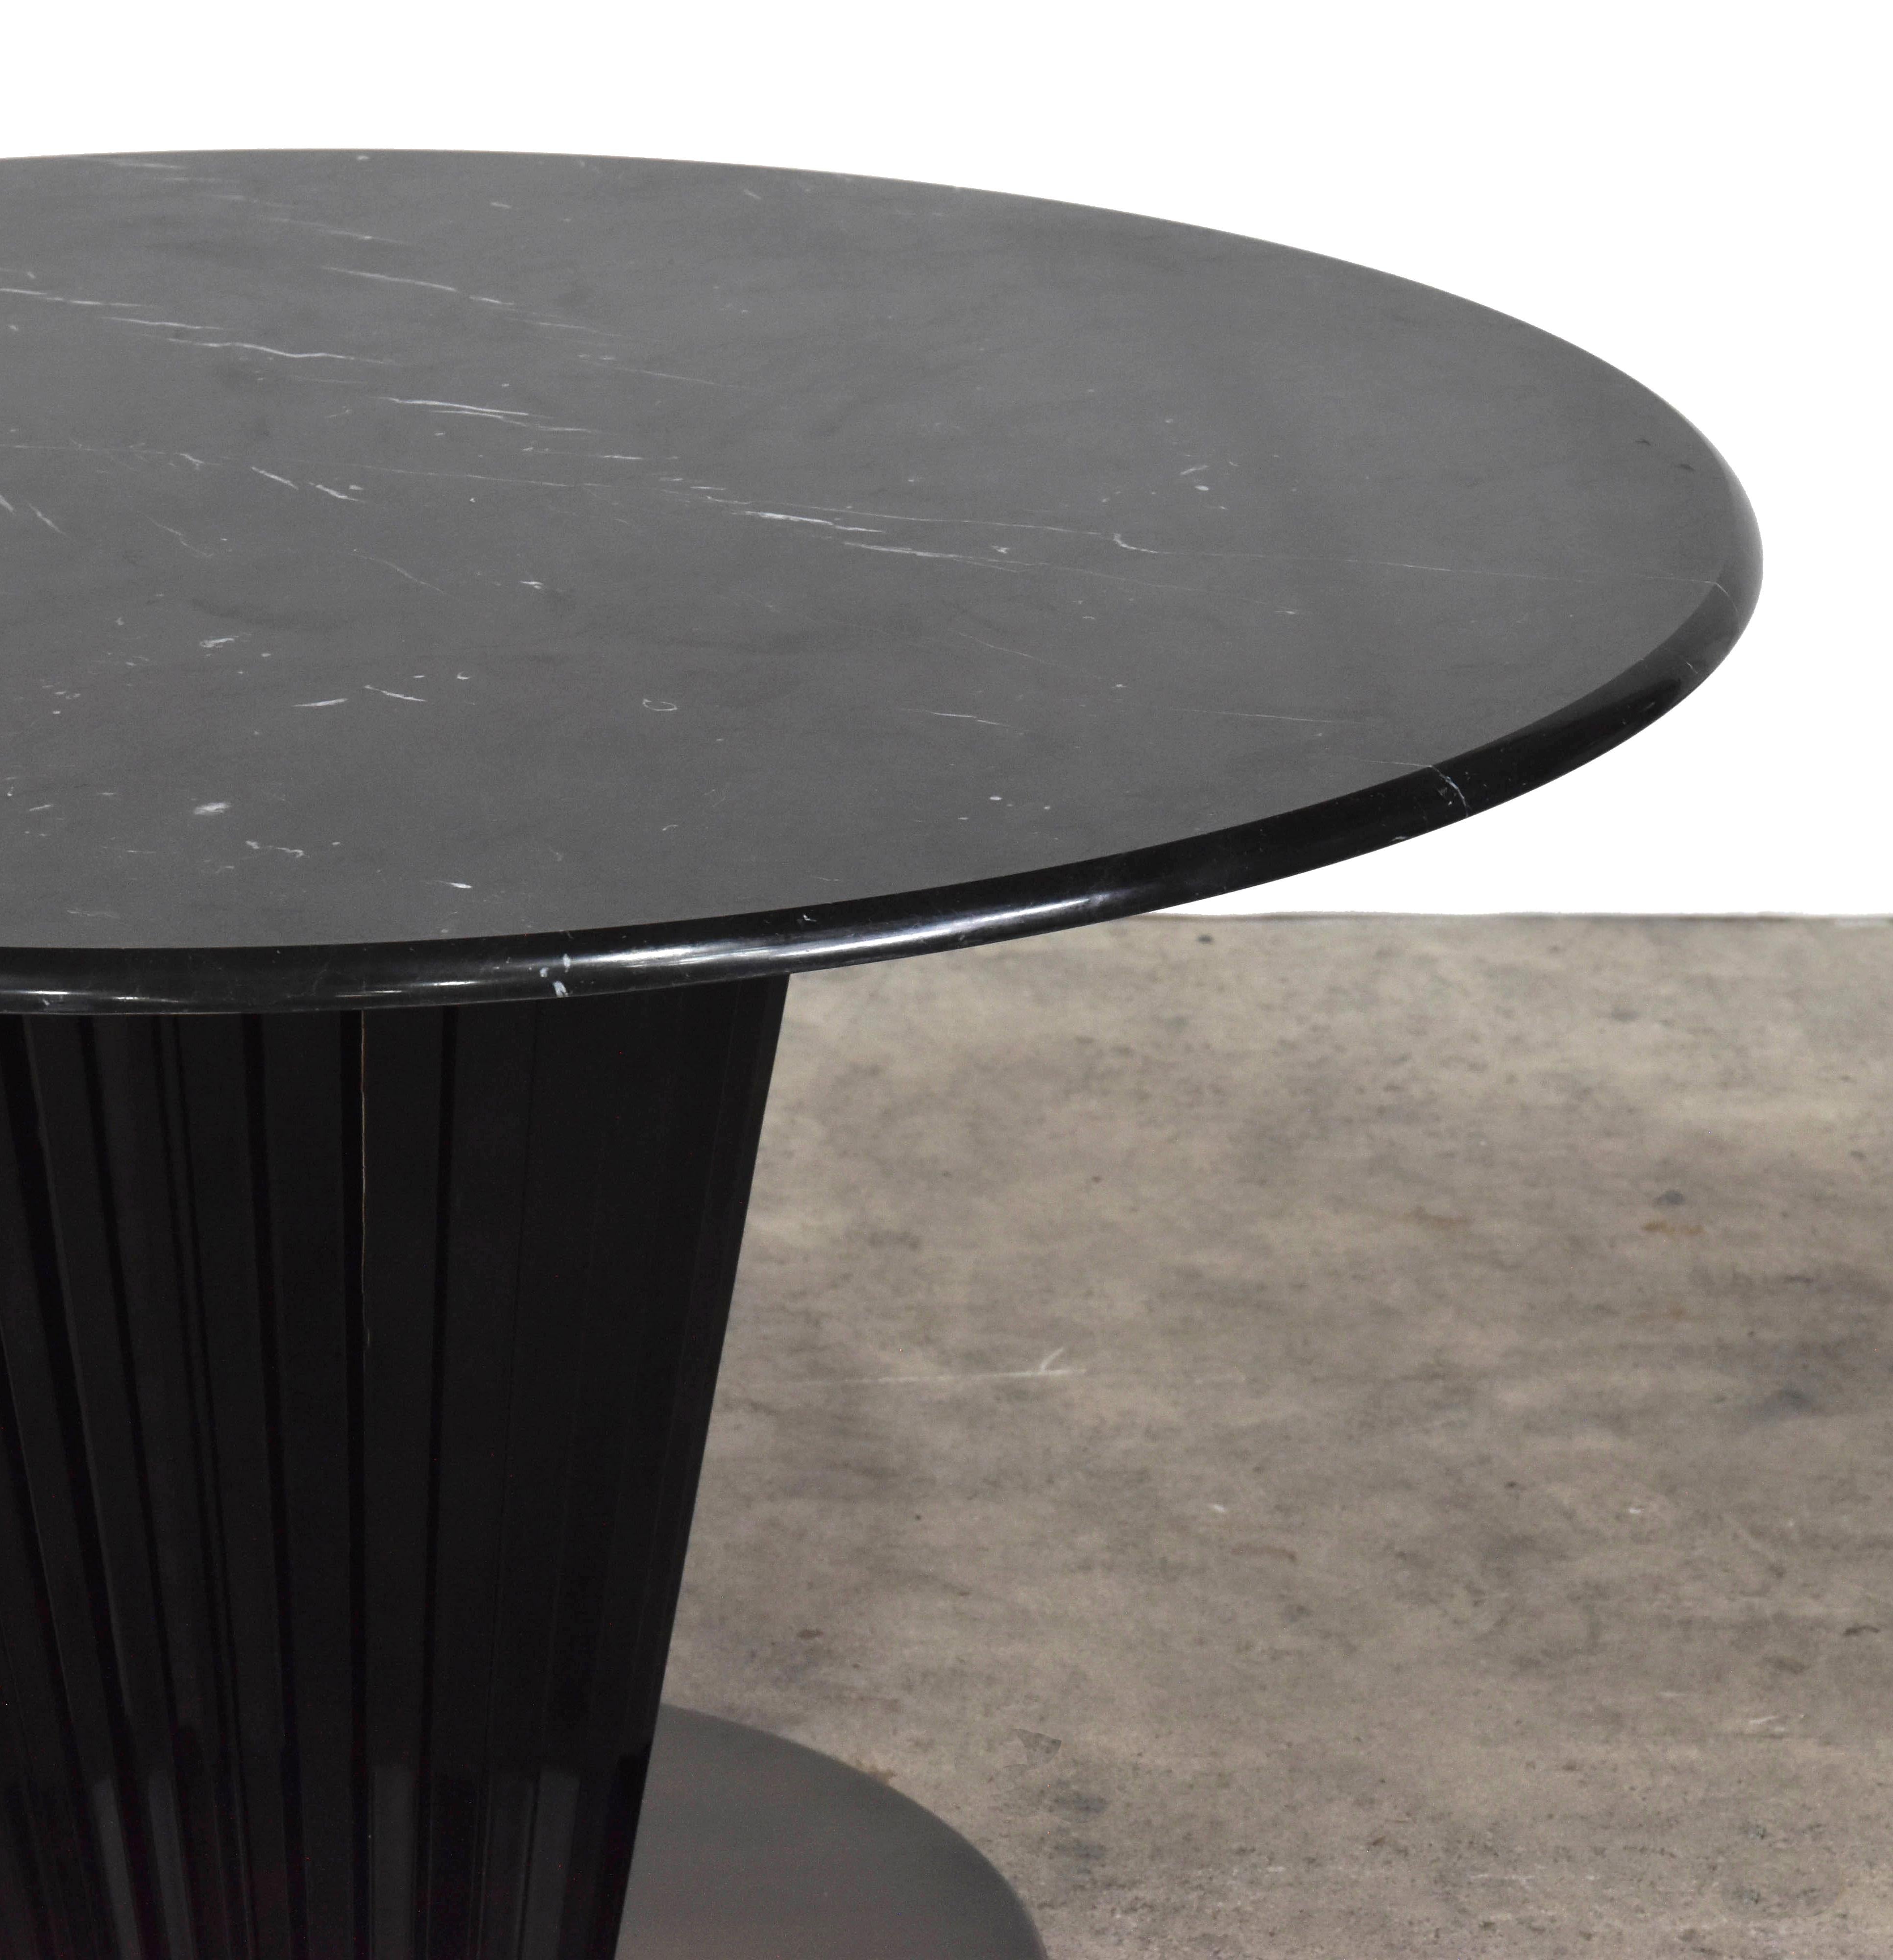 Der Royal-Tisch ist vom Art Deco inspiriert, hat eine Platte aus Marquina-Marmor und einen schwarz glänzend lackierten Sockel mit geriffelten Details.
    